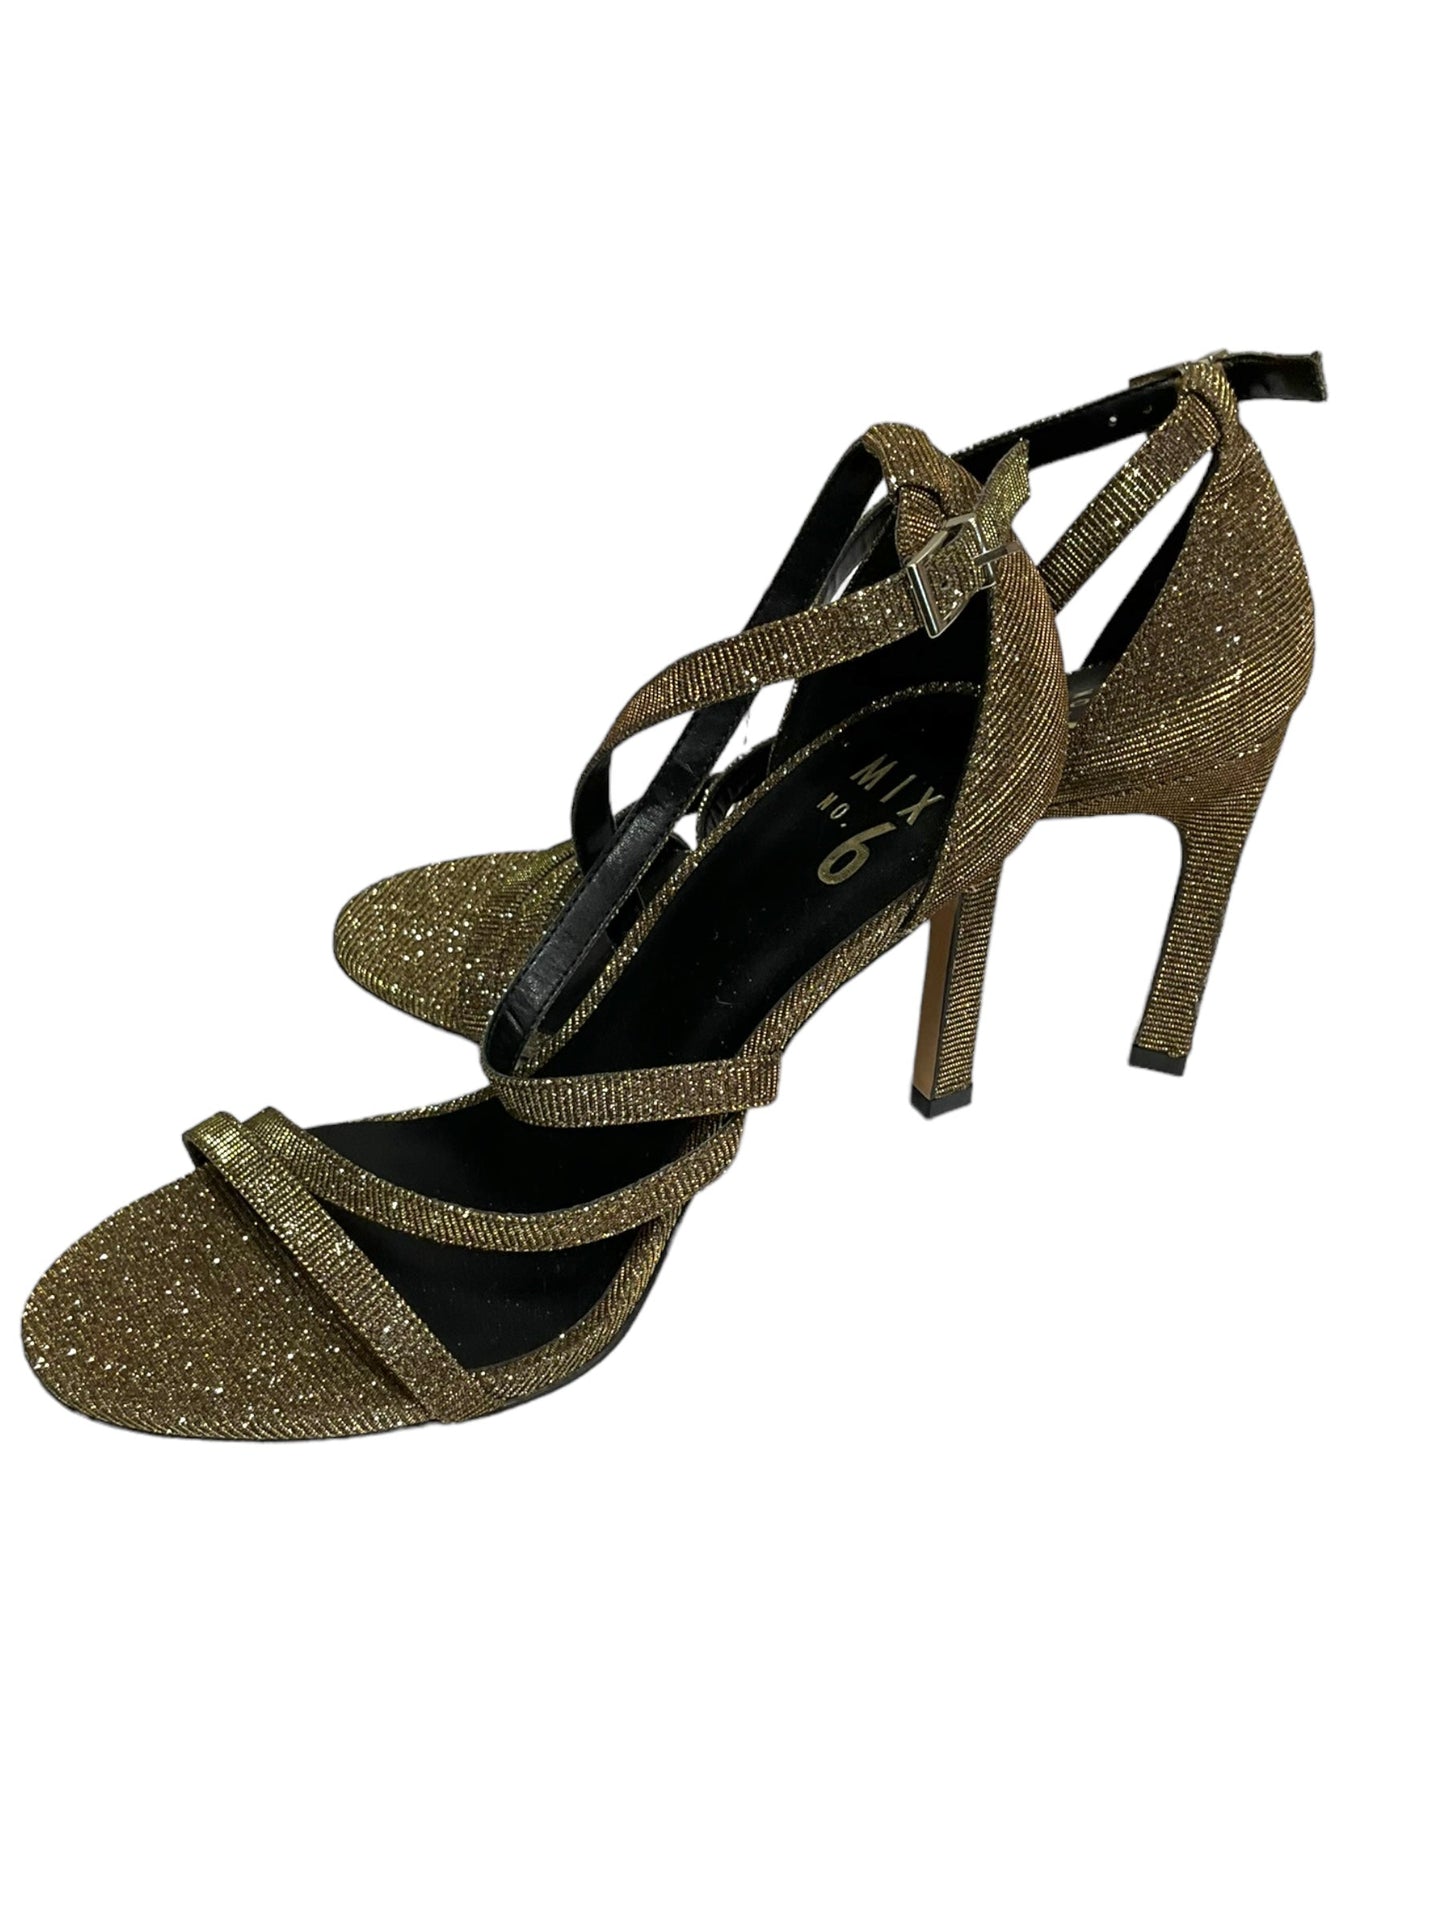 Bronze Shoes Heels Stiletto Mix No 6, Size 8.5